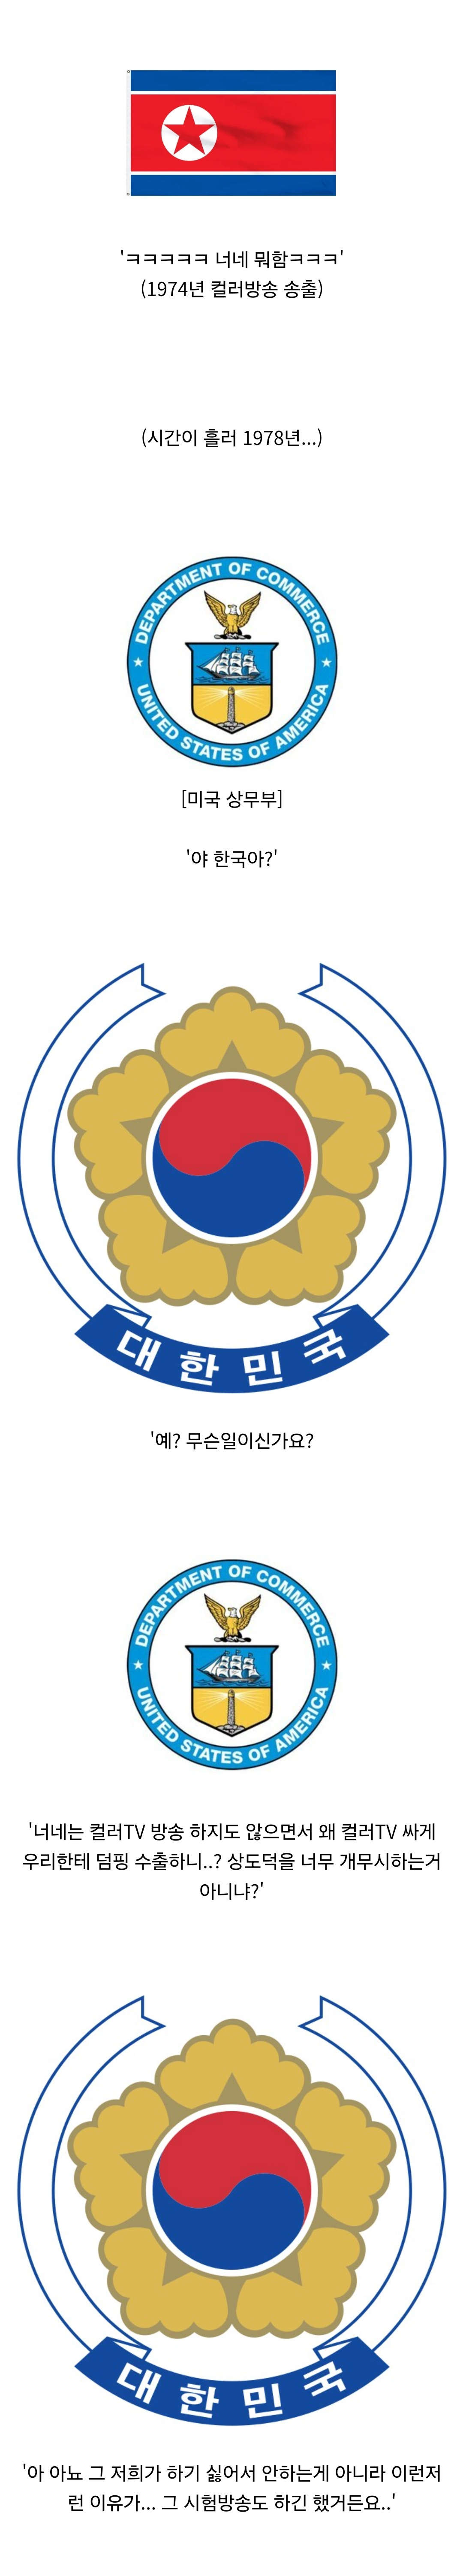 한국에 컬러TV가 보급되기 시작한 경위2.jpg